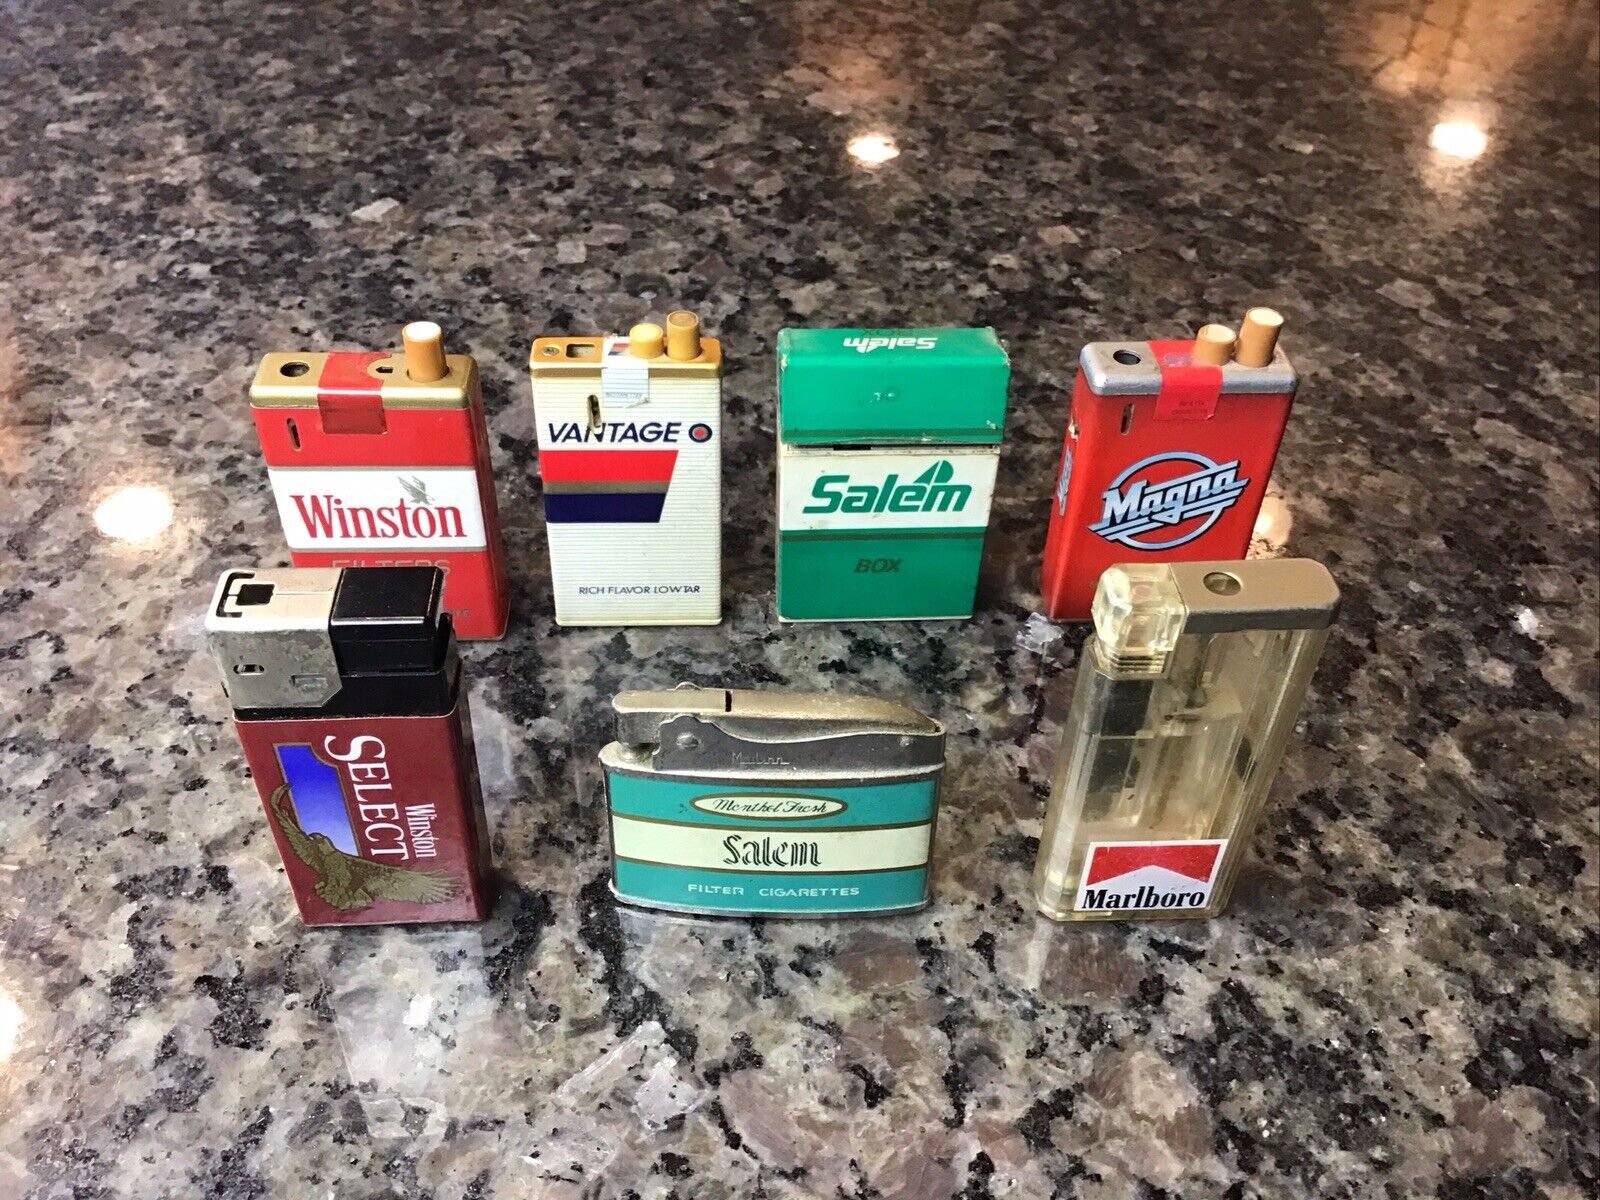 VINTAGE Lot of 7 Advertising Cigarette Lighters WINSTON SALEM VANTAGE MARLBORO